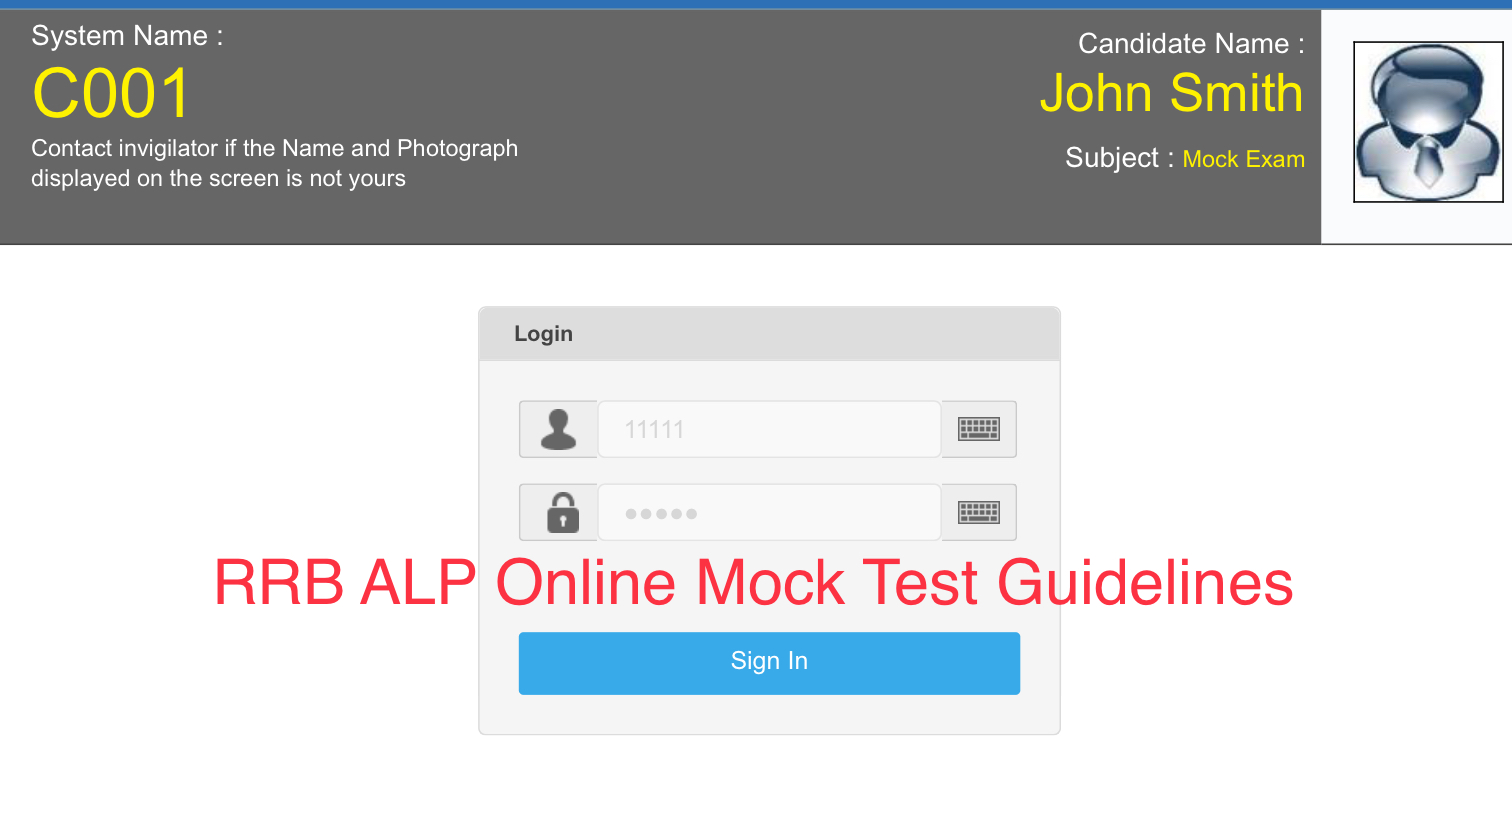 RRB ALP Online Mock Test Guidelines